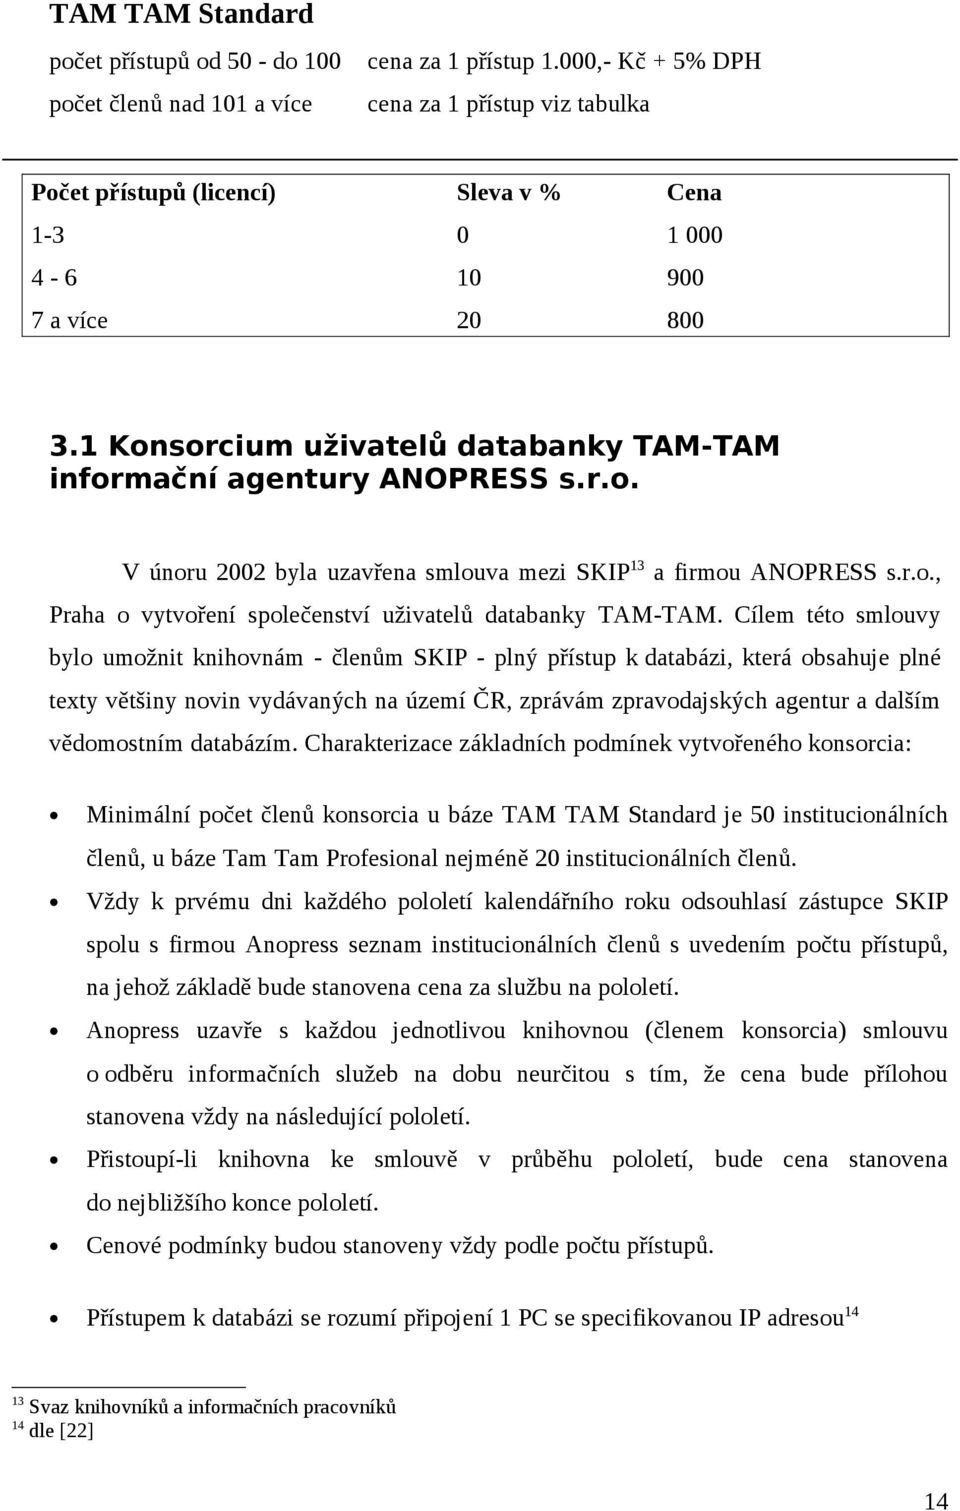 1 Konsorcium uživatelů databanky TAM-TAM informační agentury ANOPRESS s.r.o. V únoru 2002 byla uzavřena smlouva mezi SKIP 13 a firmou ANOPRESS s.r.o., Praha o vytvoření společenství uživatelů databanky TAM-TAM.